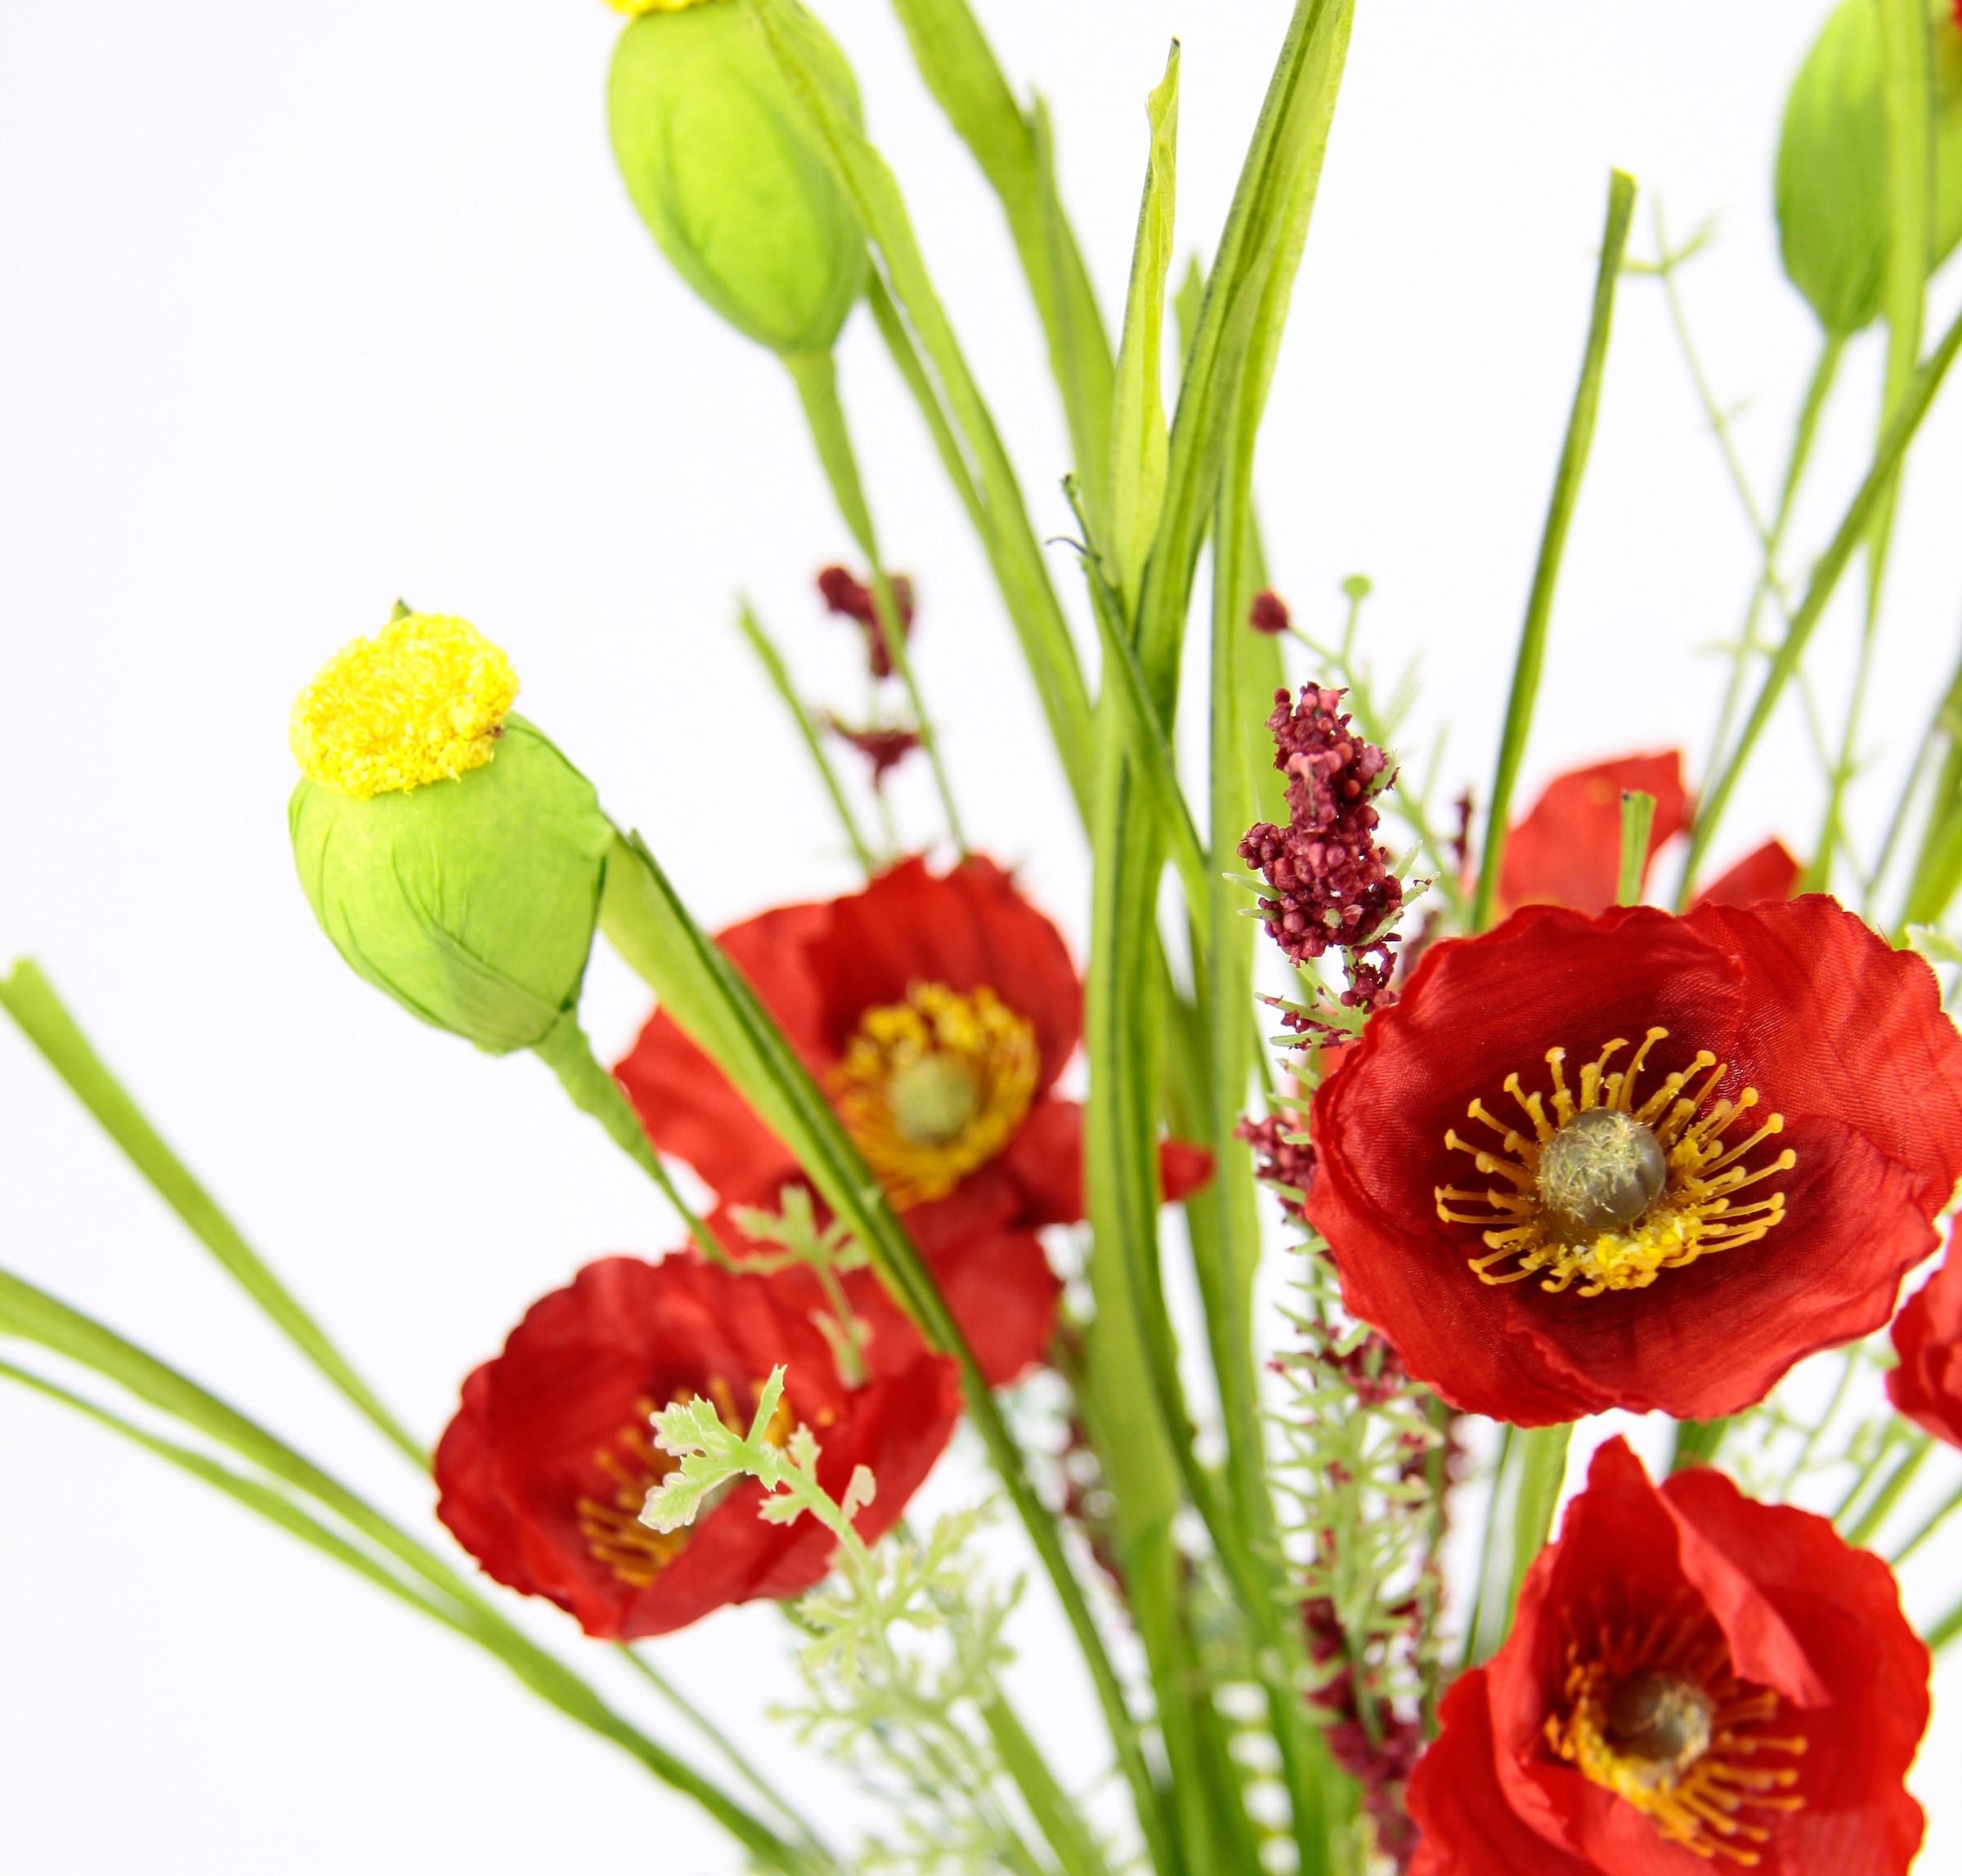 I.GE.A. Kunstblume »Mohnblumenbusch in Vase aus Keramik«, Blumen Mohnblume Mohn Mohnbusch Bouquet Strauß Seidenblumenstrauß